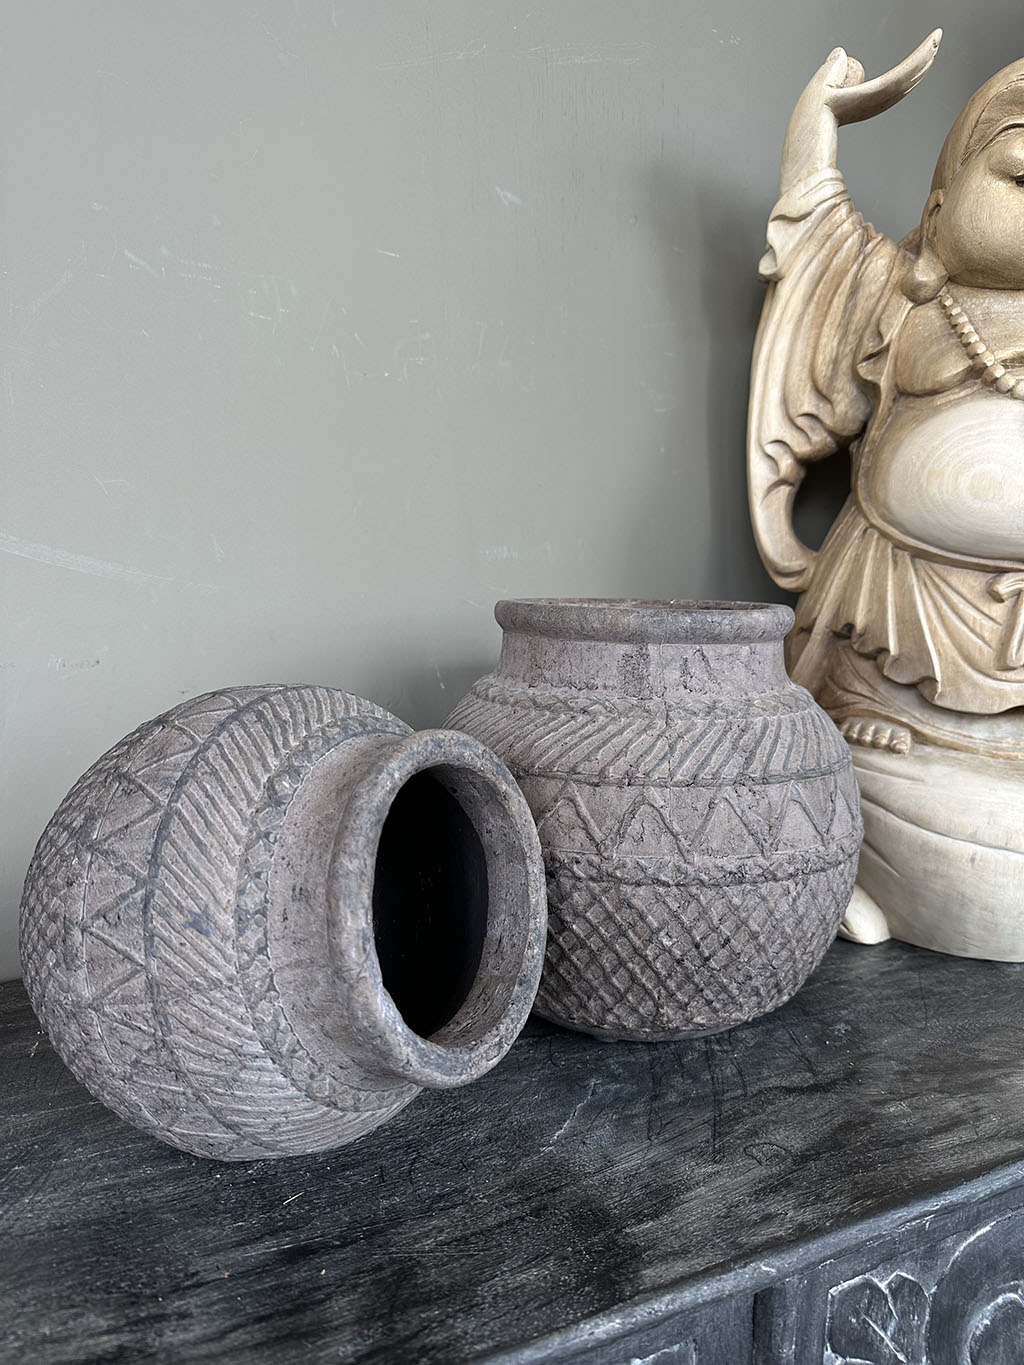 Stevige en robuuste grijze aardewerken pot met een stoere uitstraling. De grijze kleur geeft de pot een eigentijdse en veelzijdige uitstraling, waardoor hij perfect past bij verschillende interieurstijlen.